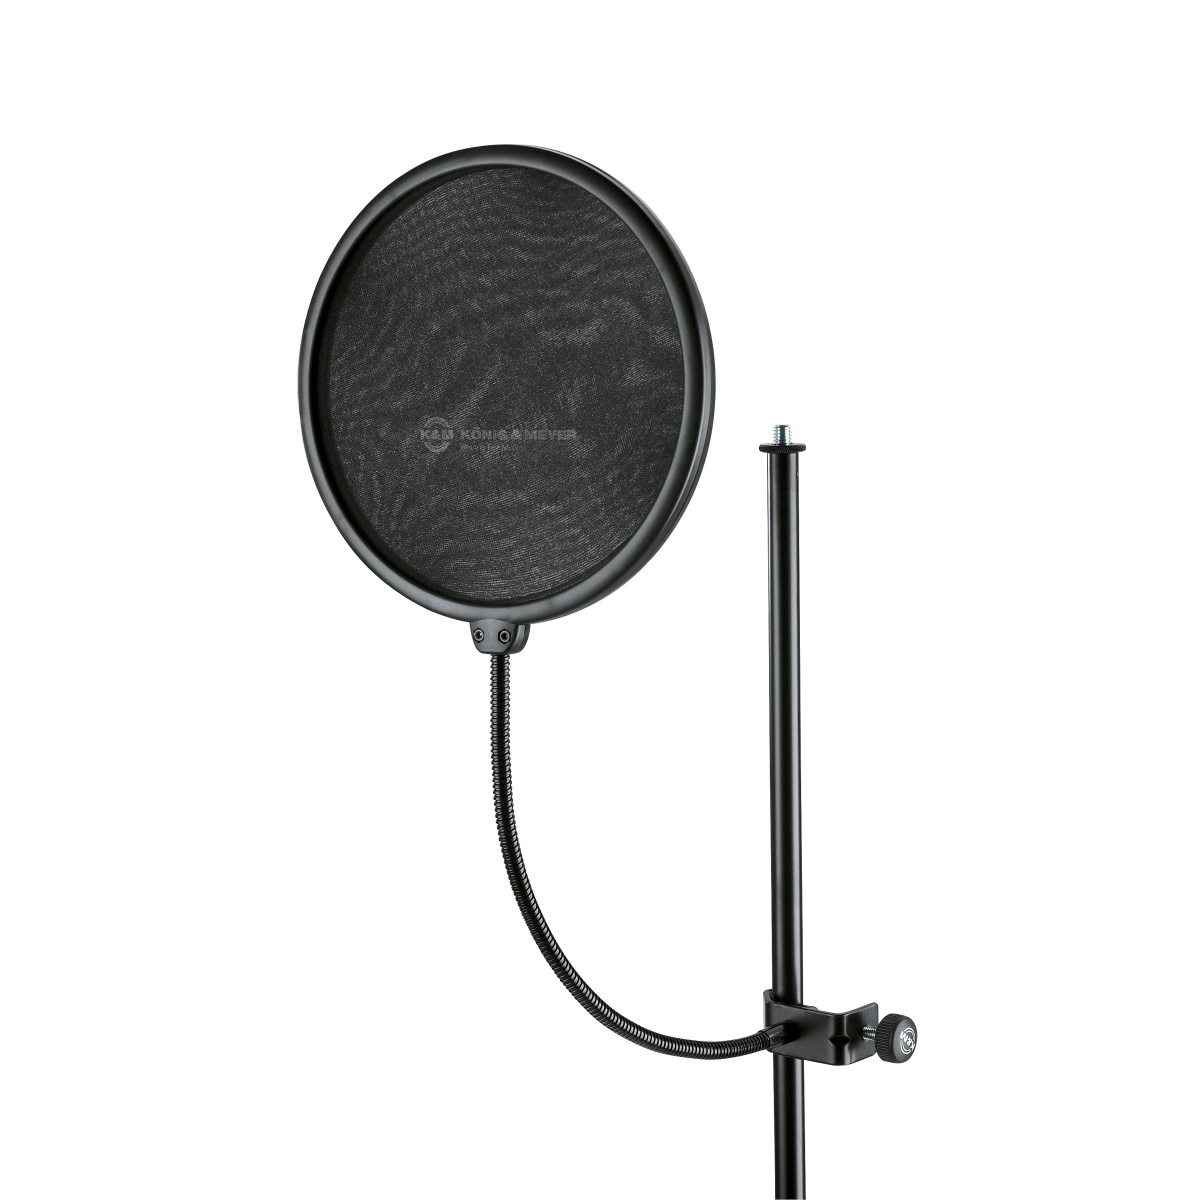 Аксессуары для микрофонов K&M 23966-000-55 настольная стойка трипод mobicent nkf 1 для микрофона с держателем паук диаметром 2 4 см